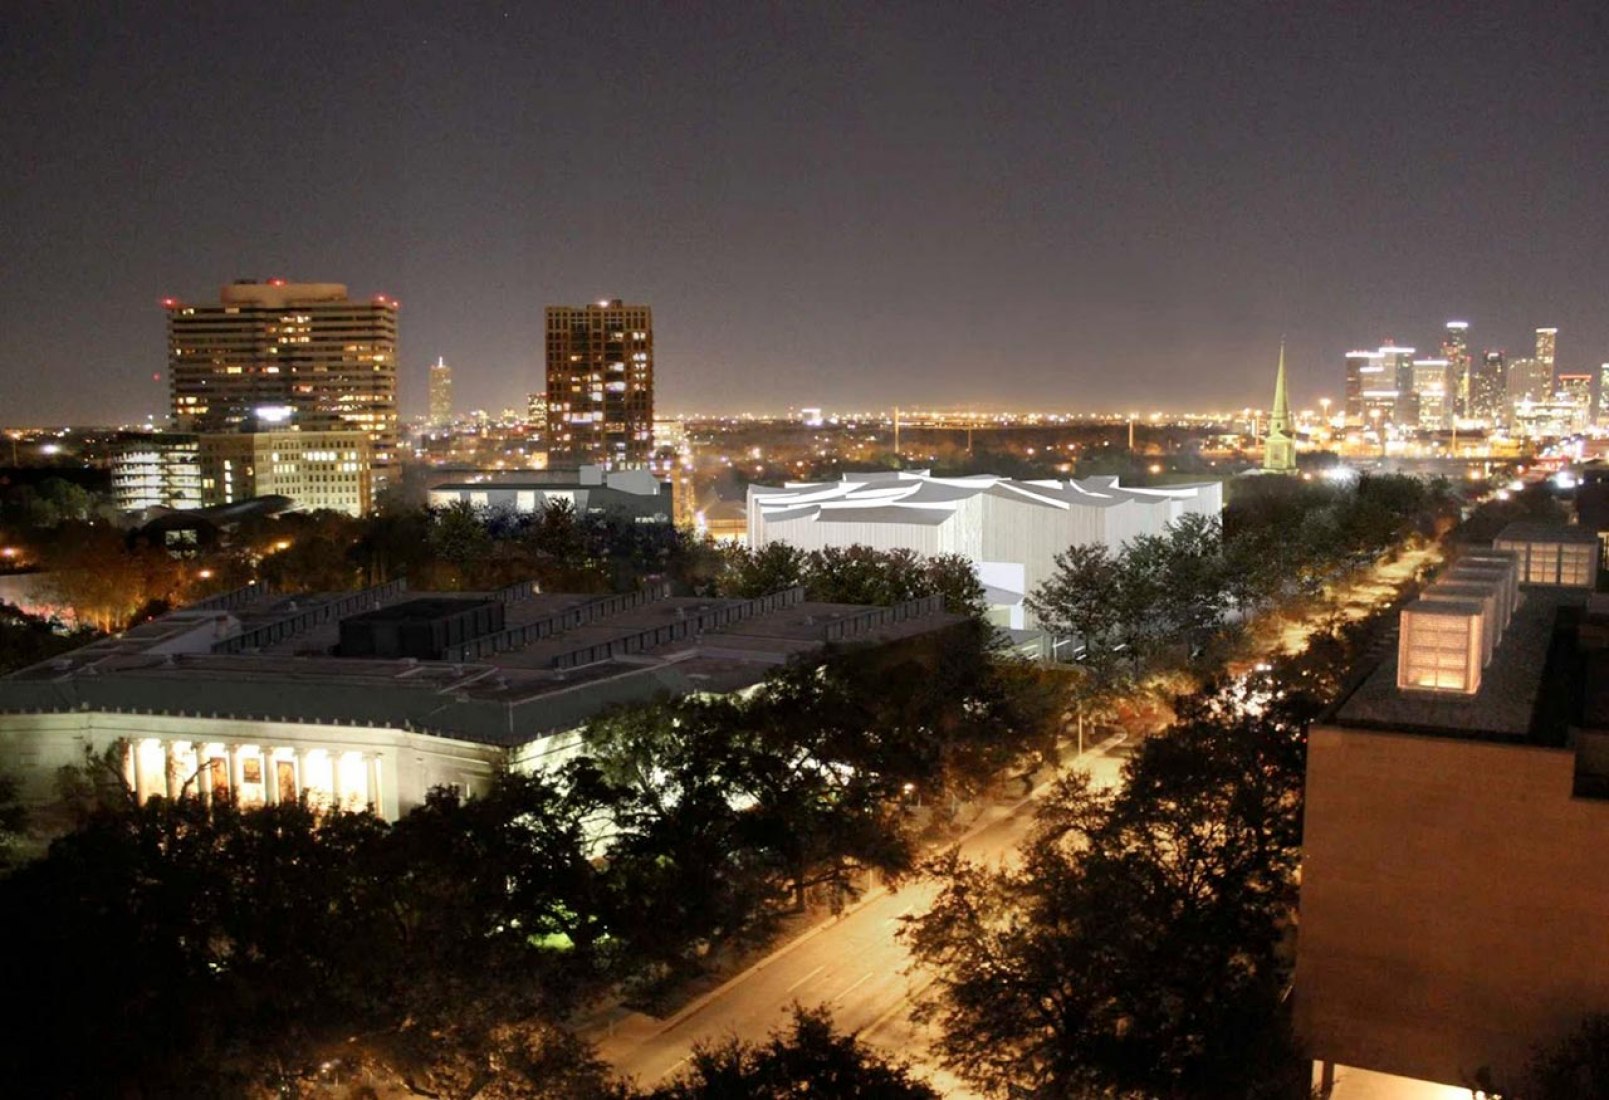 Vista aérea nocturna del Fayez S. Sarofim Campus, con el Nancy y Rich Kinder Building y la Glassell School of Art. Visualización cortesía de Steven Holl Architects.